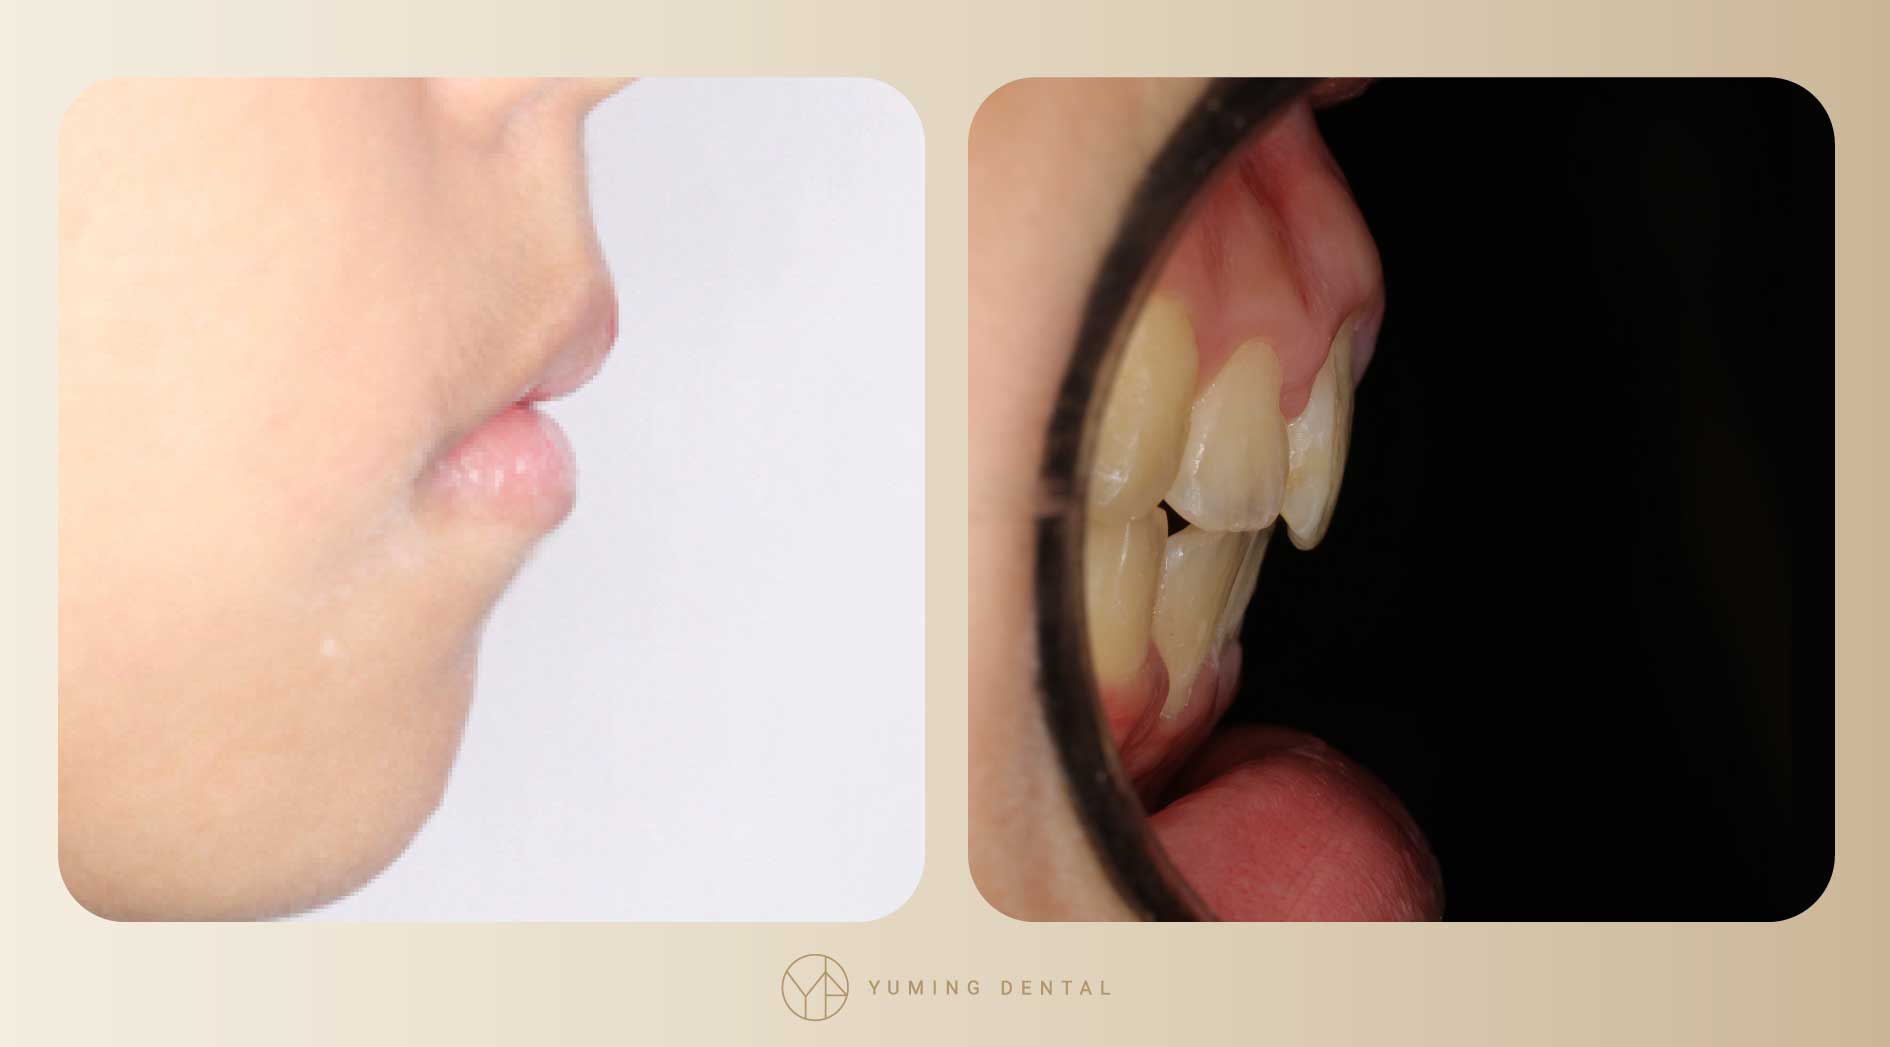 矯正療程結束，暴牙及嘴凸的情形大幅改善。